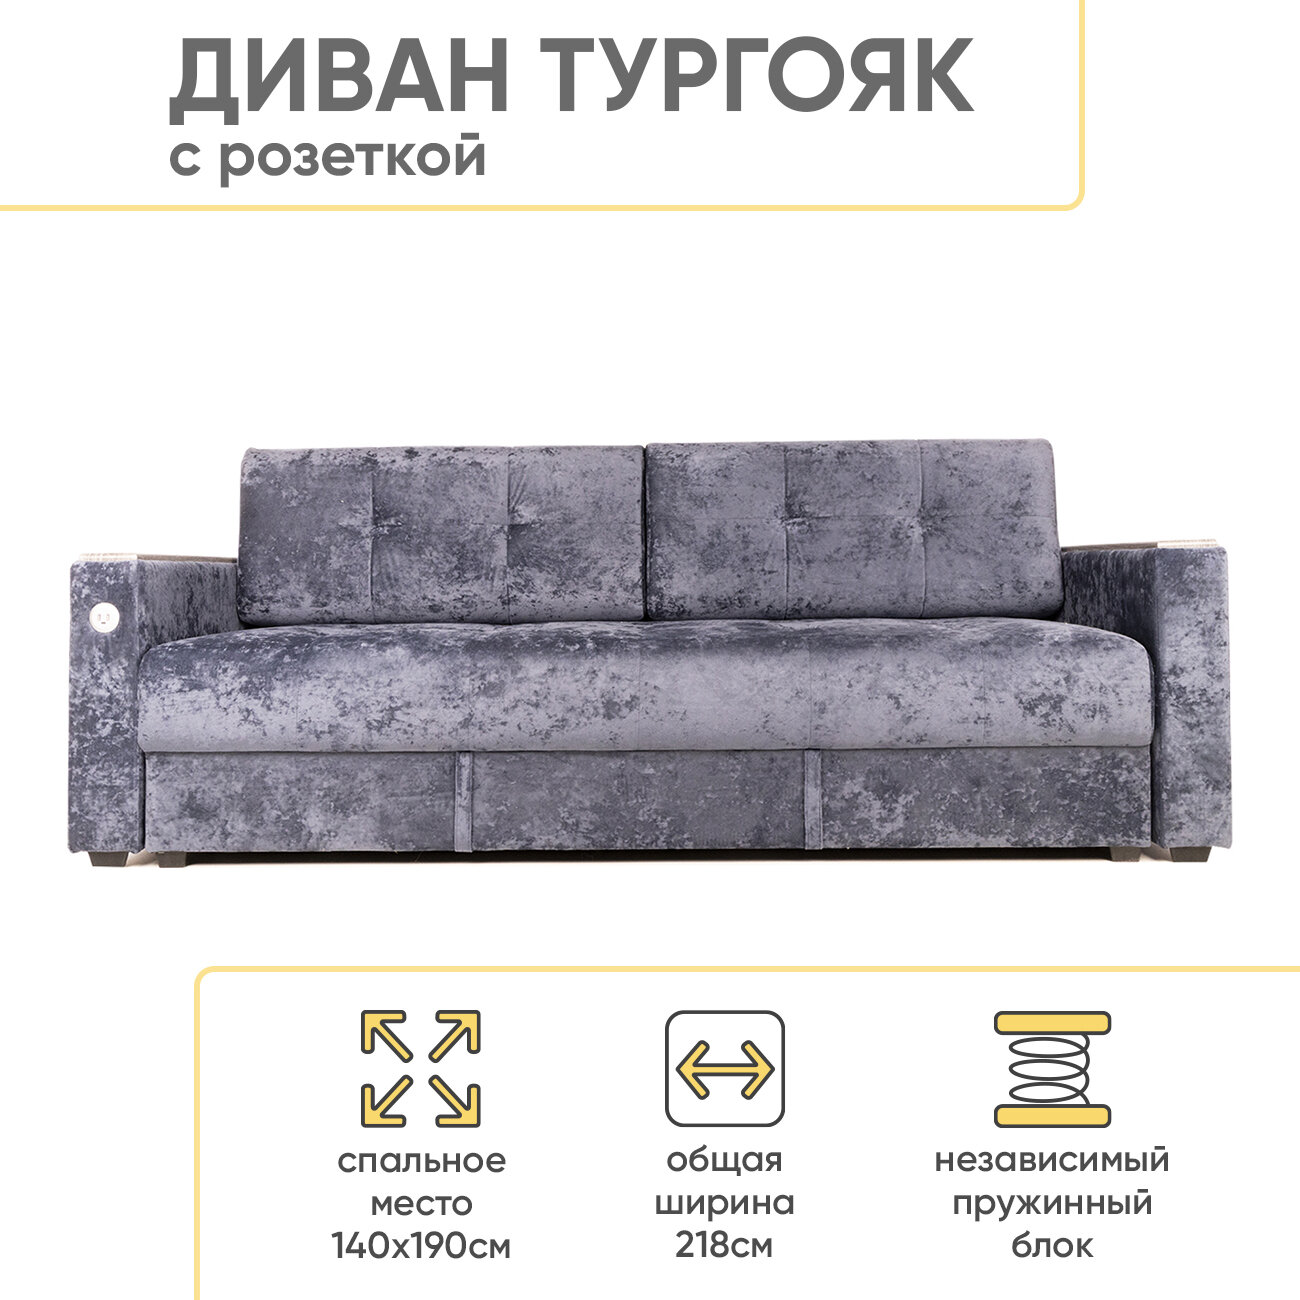 Диван кровать Тургояк раскладной с USB розеткой, 2 подушками и ящиком 140х190 см, Темно-синий Ocean 978